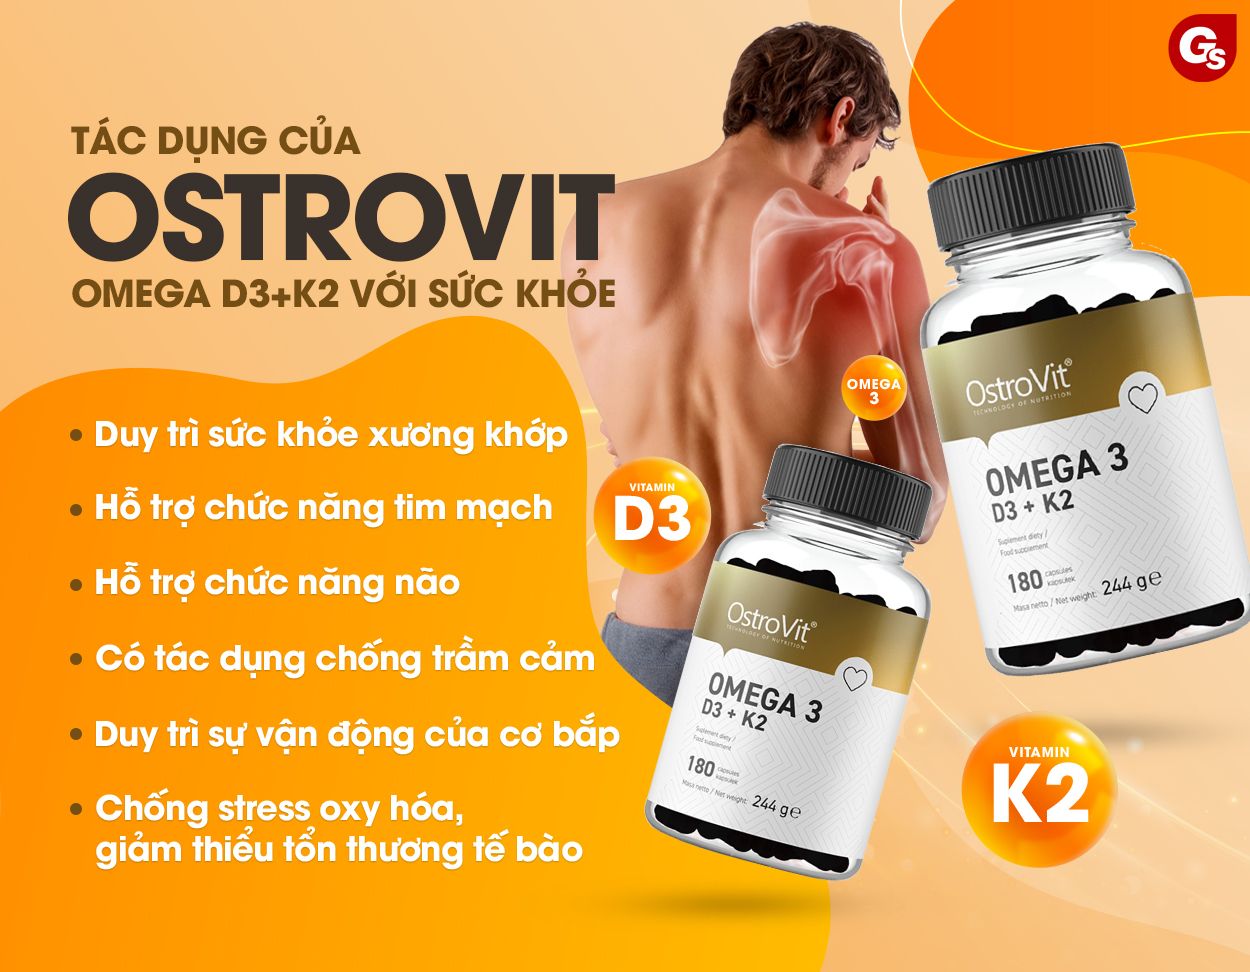 Ostrovit-Omega3-D3-K2-bao-ve-xuong-khop-gymstore-2